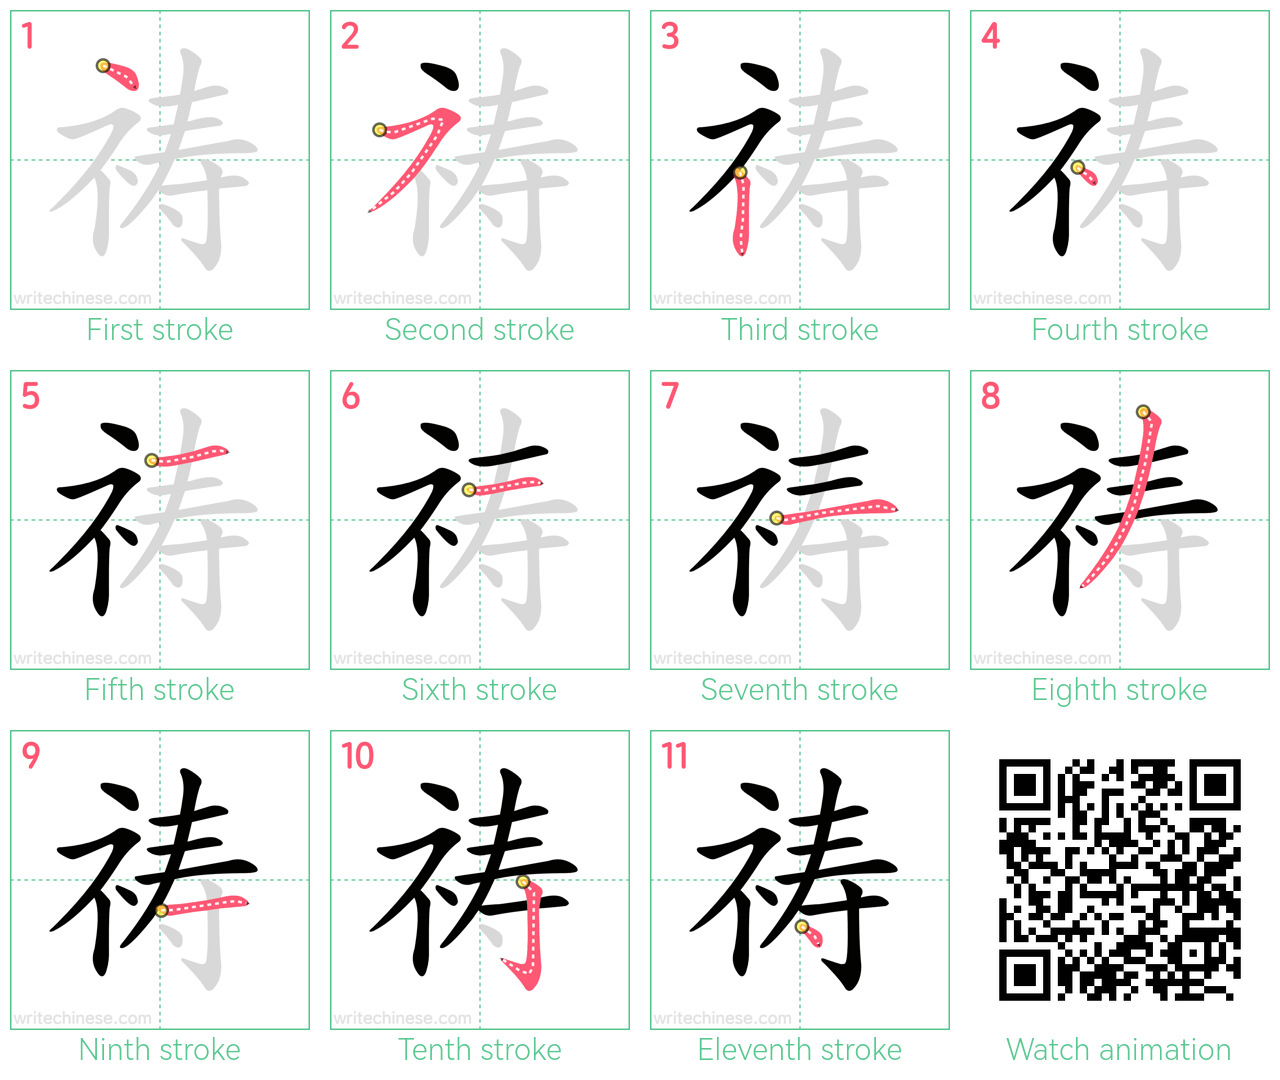 祷 step-by-step stroke order diagrams